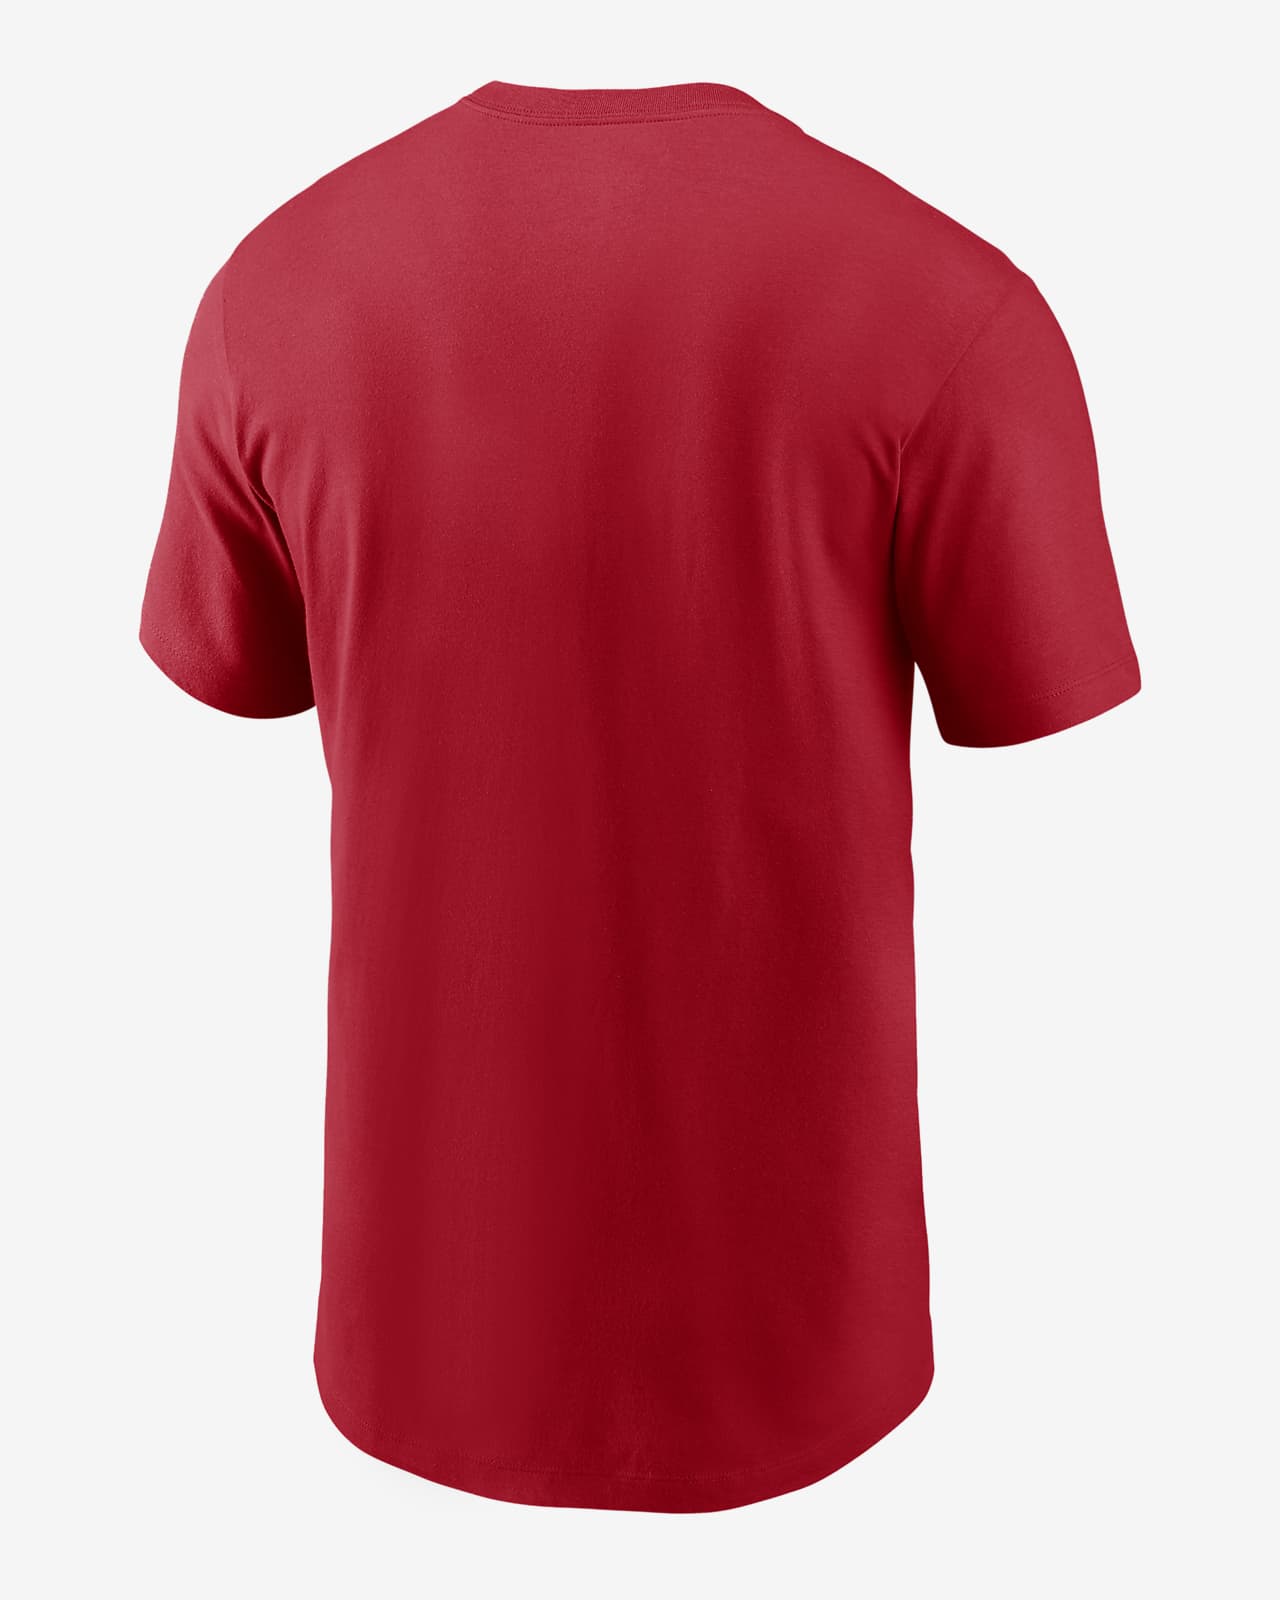 Polering del Modsætte sig Nike City Connect Wordmark (MLB Atlanta Braves) Men's T-Shirt. Nike.com